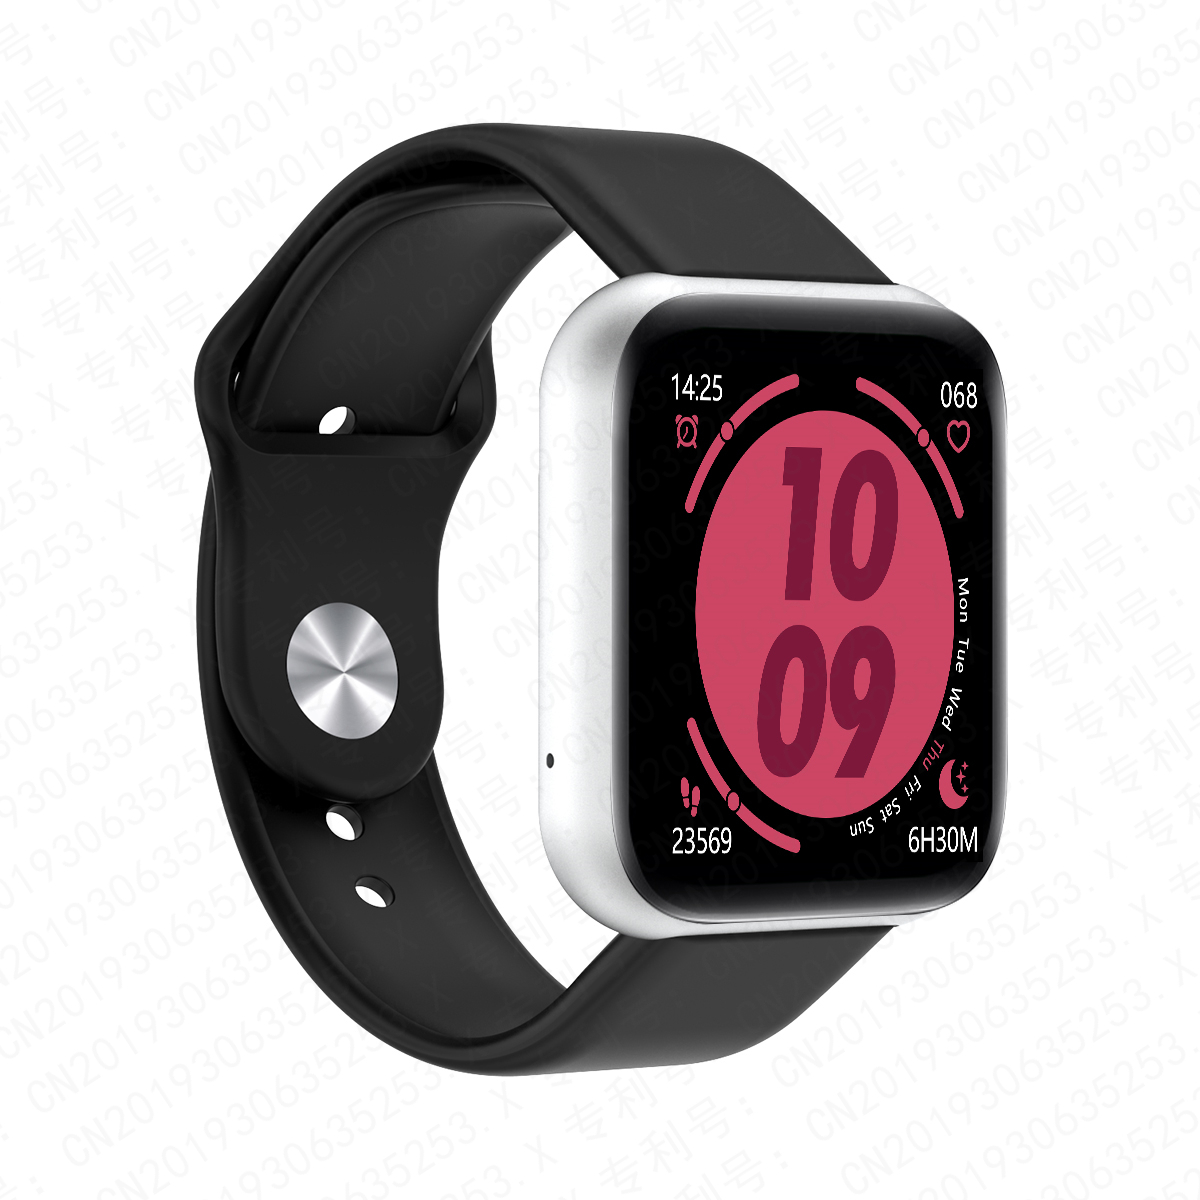 2020 D20 Bluetooth Smart Watches Men Women Kids Waterproof Sport Fitness Tracker Smart Bracelet Blood Pressure Heart Rate Monitor 